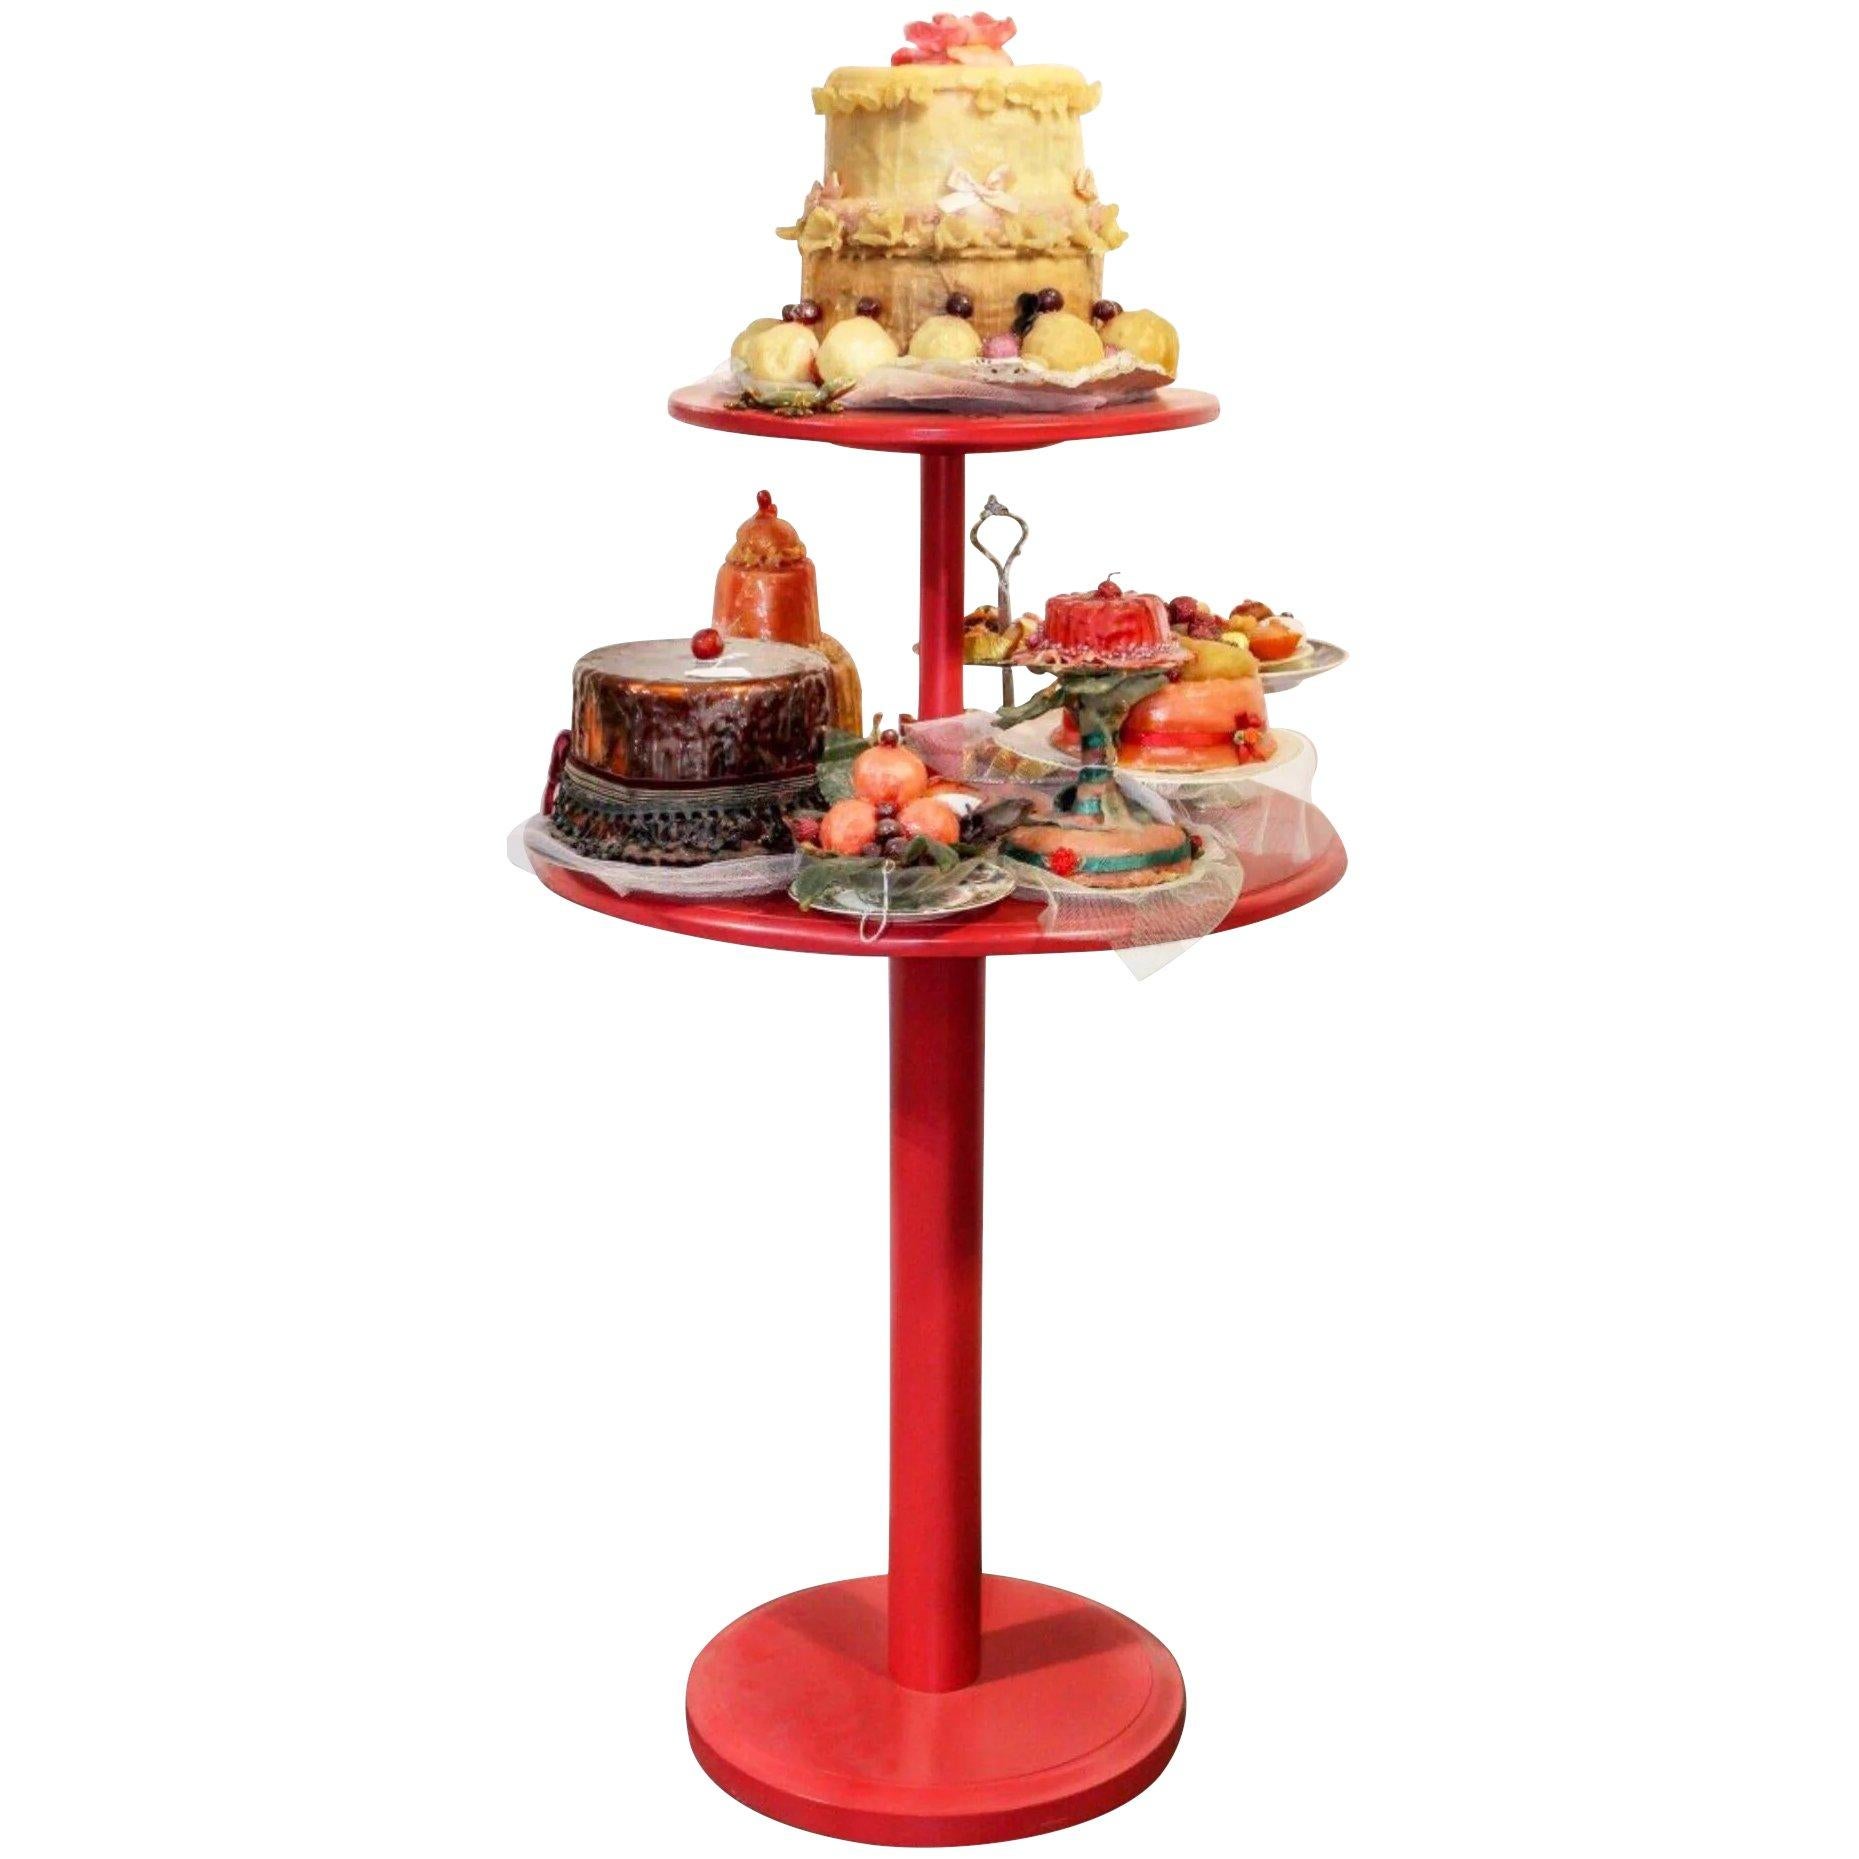 Pop Art Cake & Candy Mixed Media Mid-Century Post-Modern Sculpture Red Pedestal